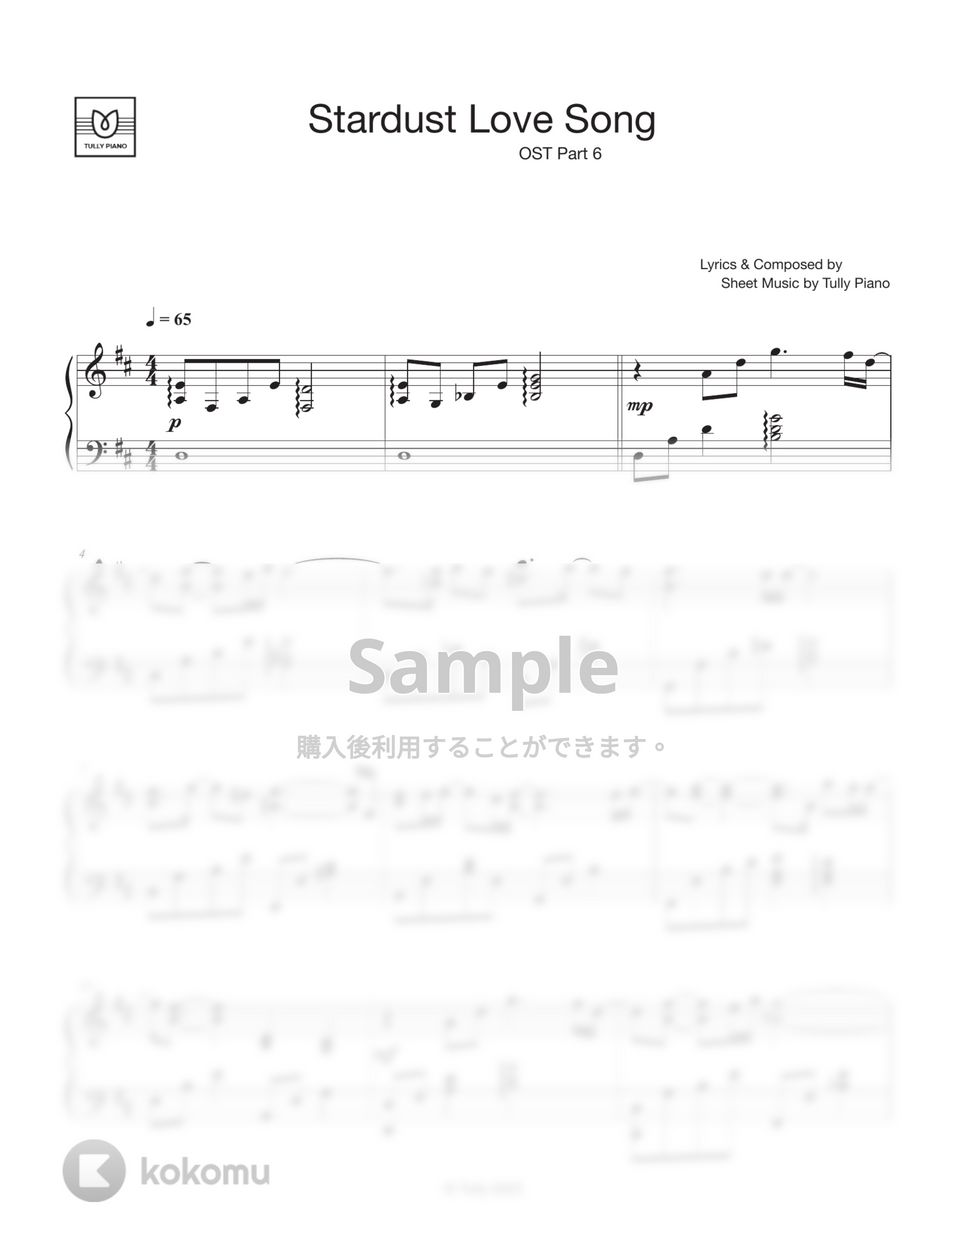 Twenty Five Twenty One OST. - JIHYO (TWICE) _ Stardust Love Song by Tully Piano